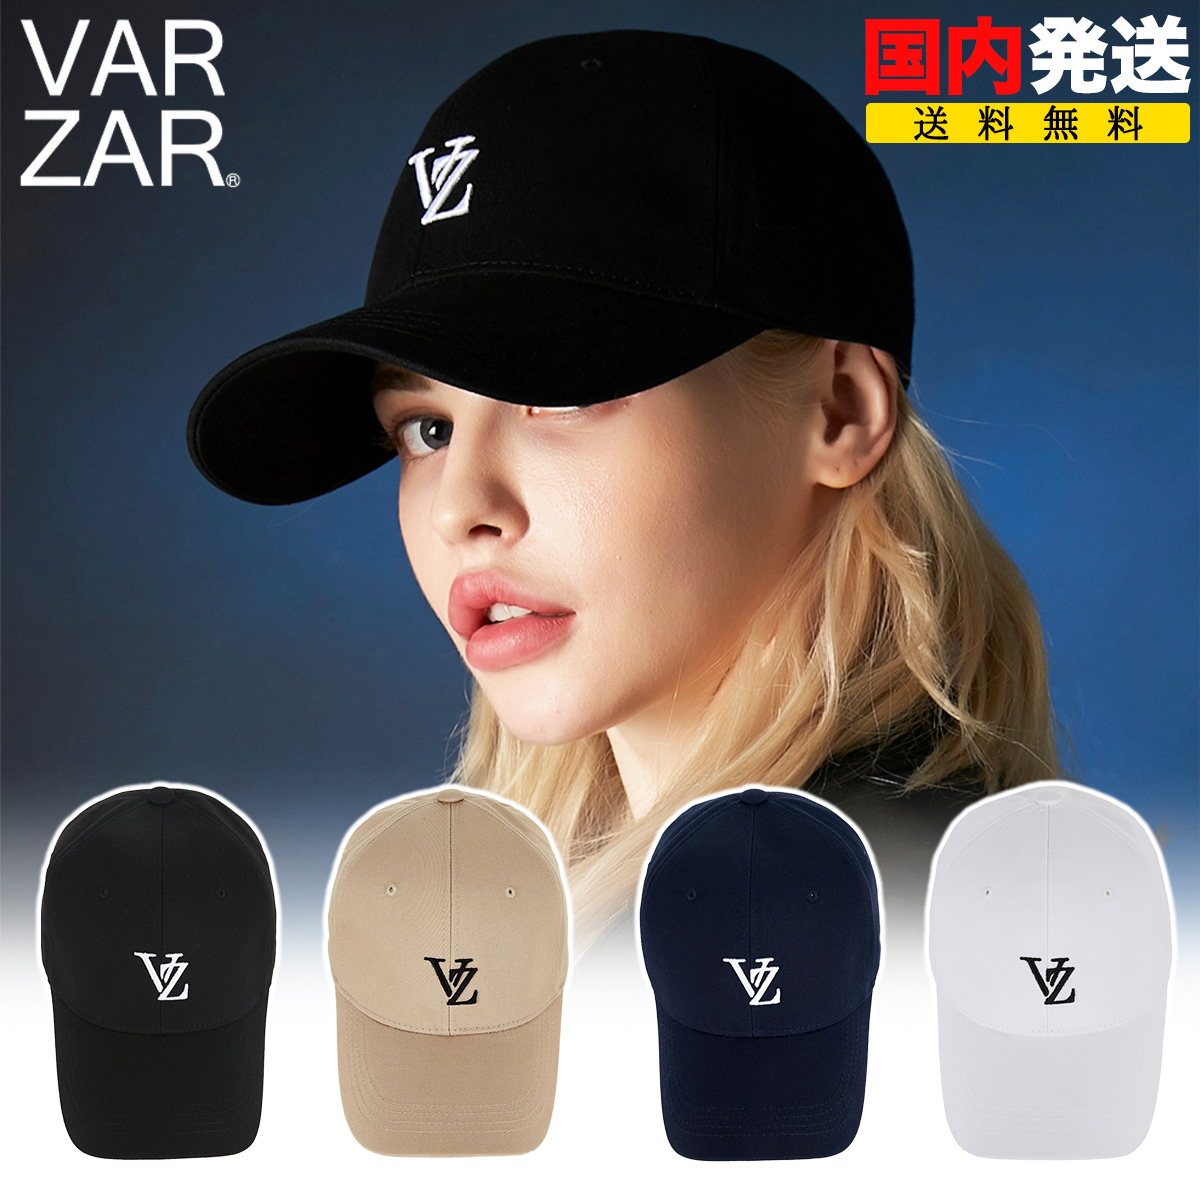 バザール キャップ VARZAR 3D Monogram logo over fit ball cap ロゴ 帽子 ユニセックス 韓国 K-POP 芸能人 アイドル愛用 メンズ レディース 正規品 [帽子]